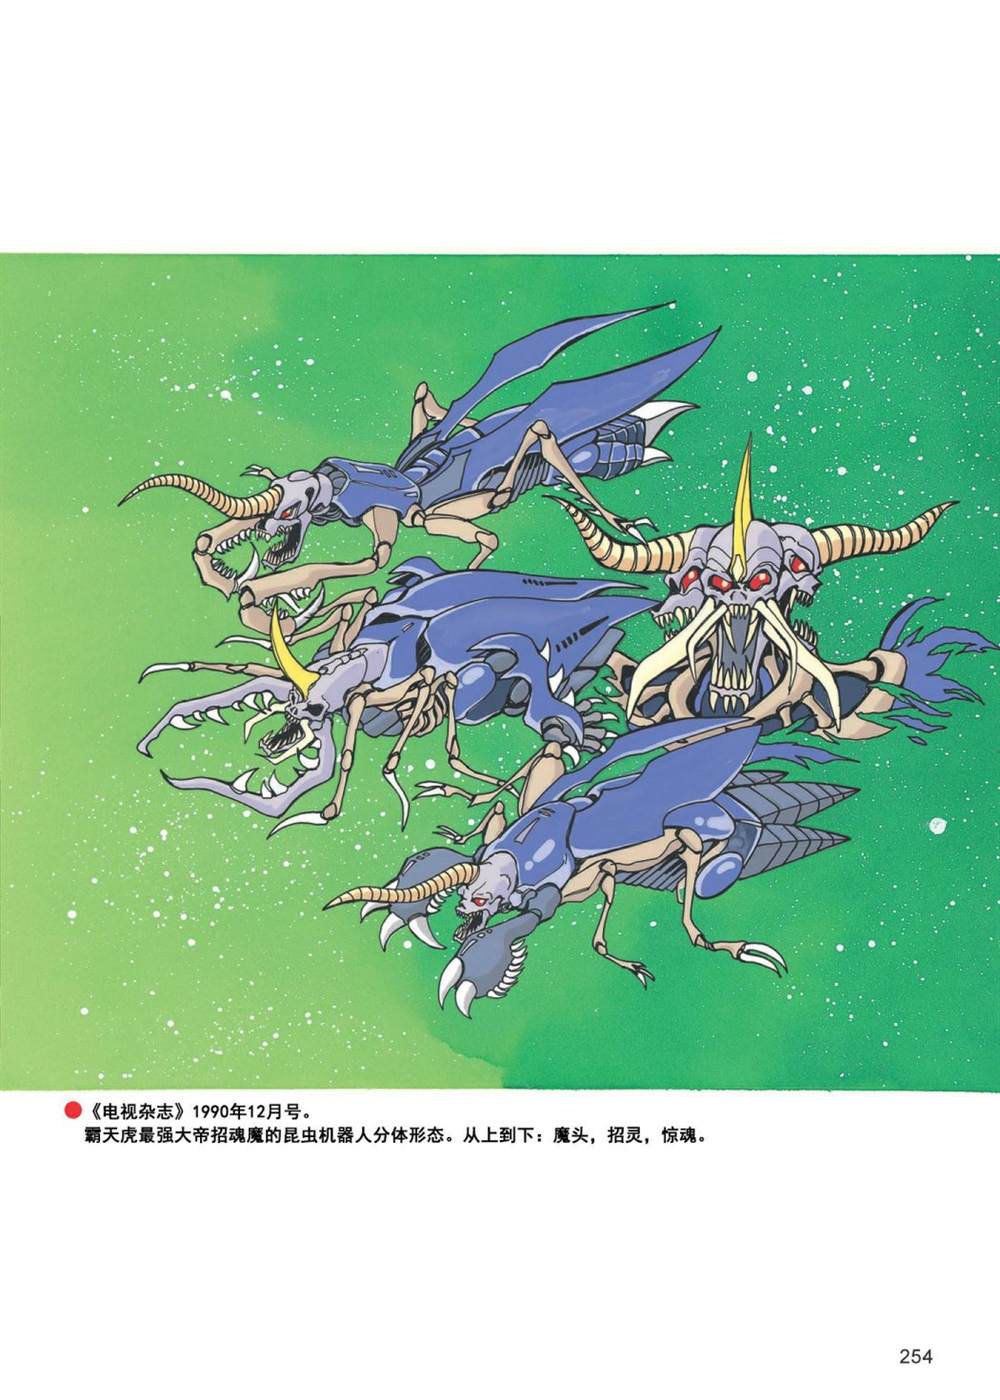 變形金剛日版G1雜誌插畫 - 《戰鬥吧！超機械生命體變形金剛：地帶》 - 5